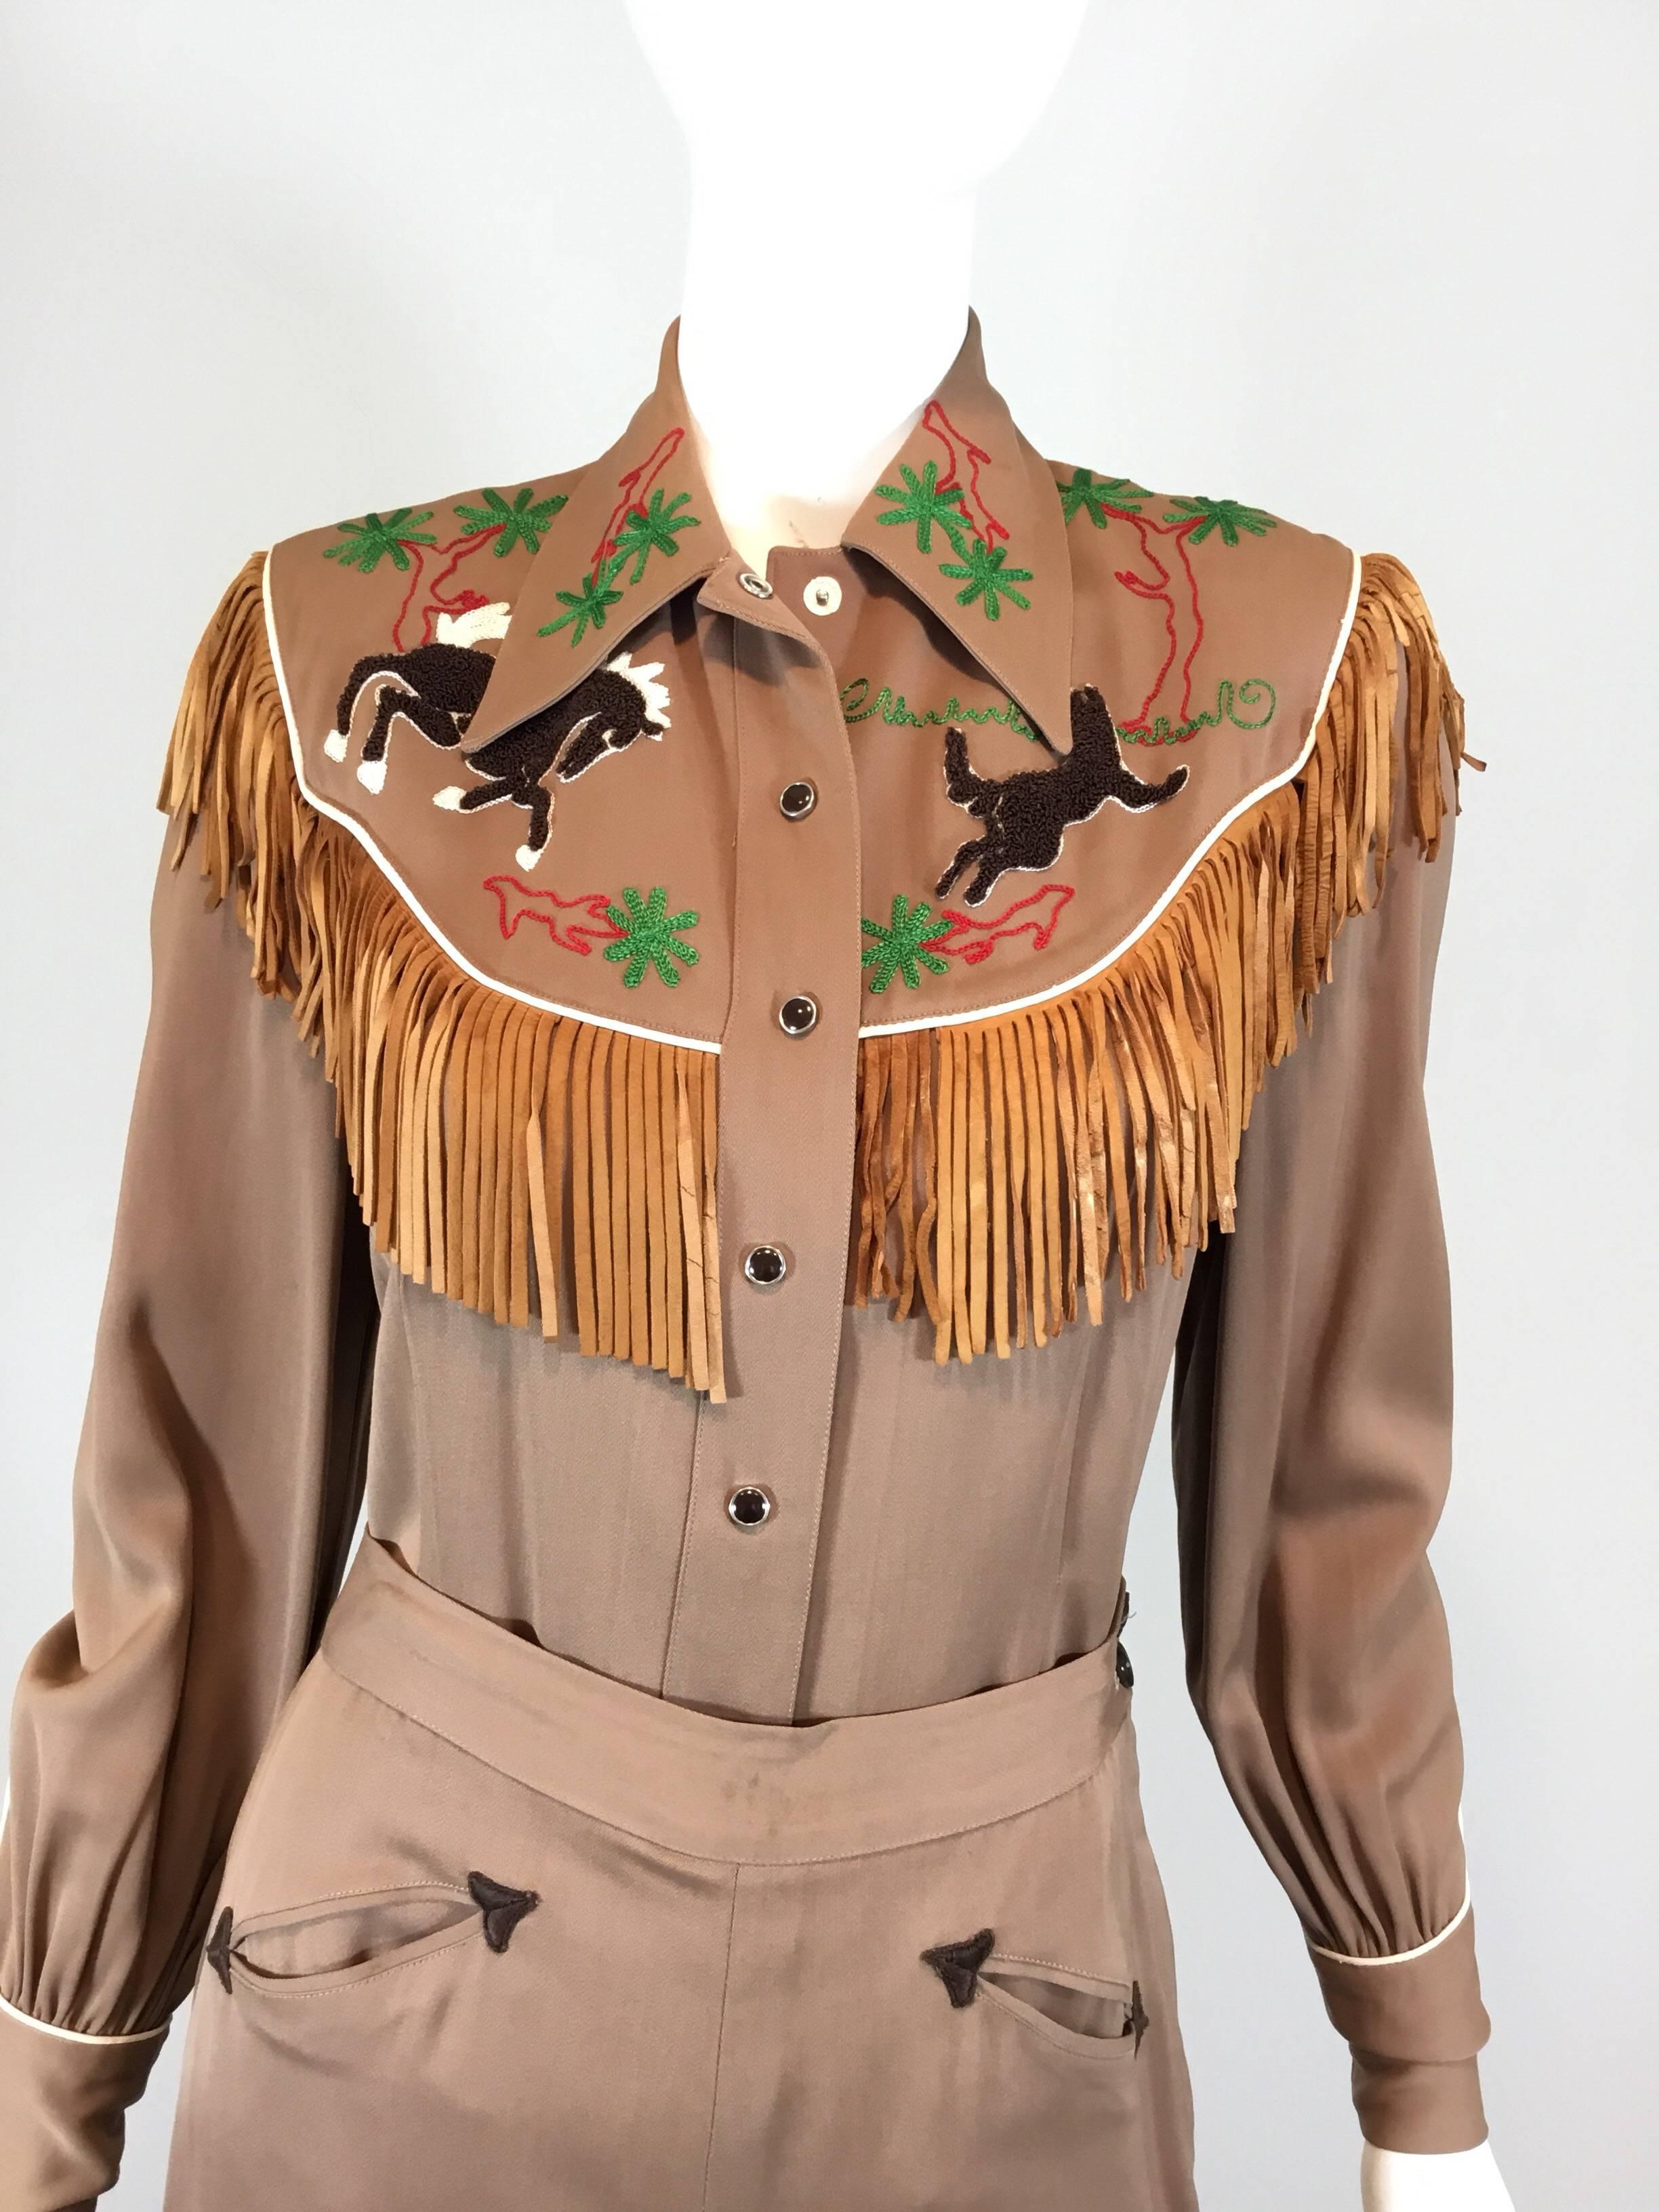 Hillbilly Westerns 1940's Western-Parade-Outfit für ein Cowgirl. Das Hemd hat Druckknopfverschlüsse auf der Vorderseite und an den Manschetten, Gabardine-Stoff mit Lederfransen und ein gesticktes Westernmotiv auf der Vorder- und Rückseite. Die